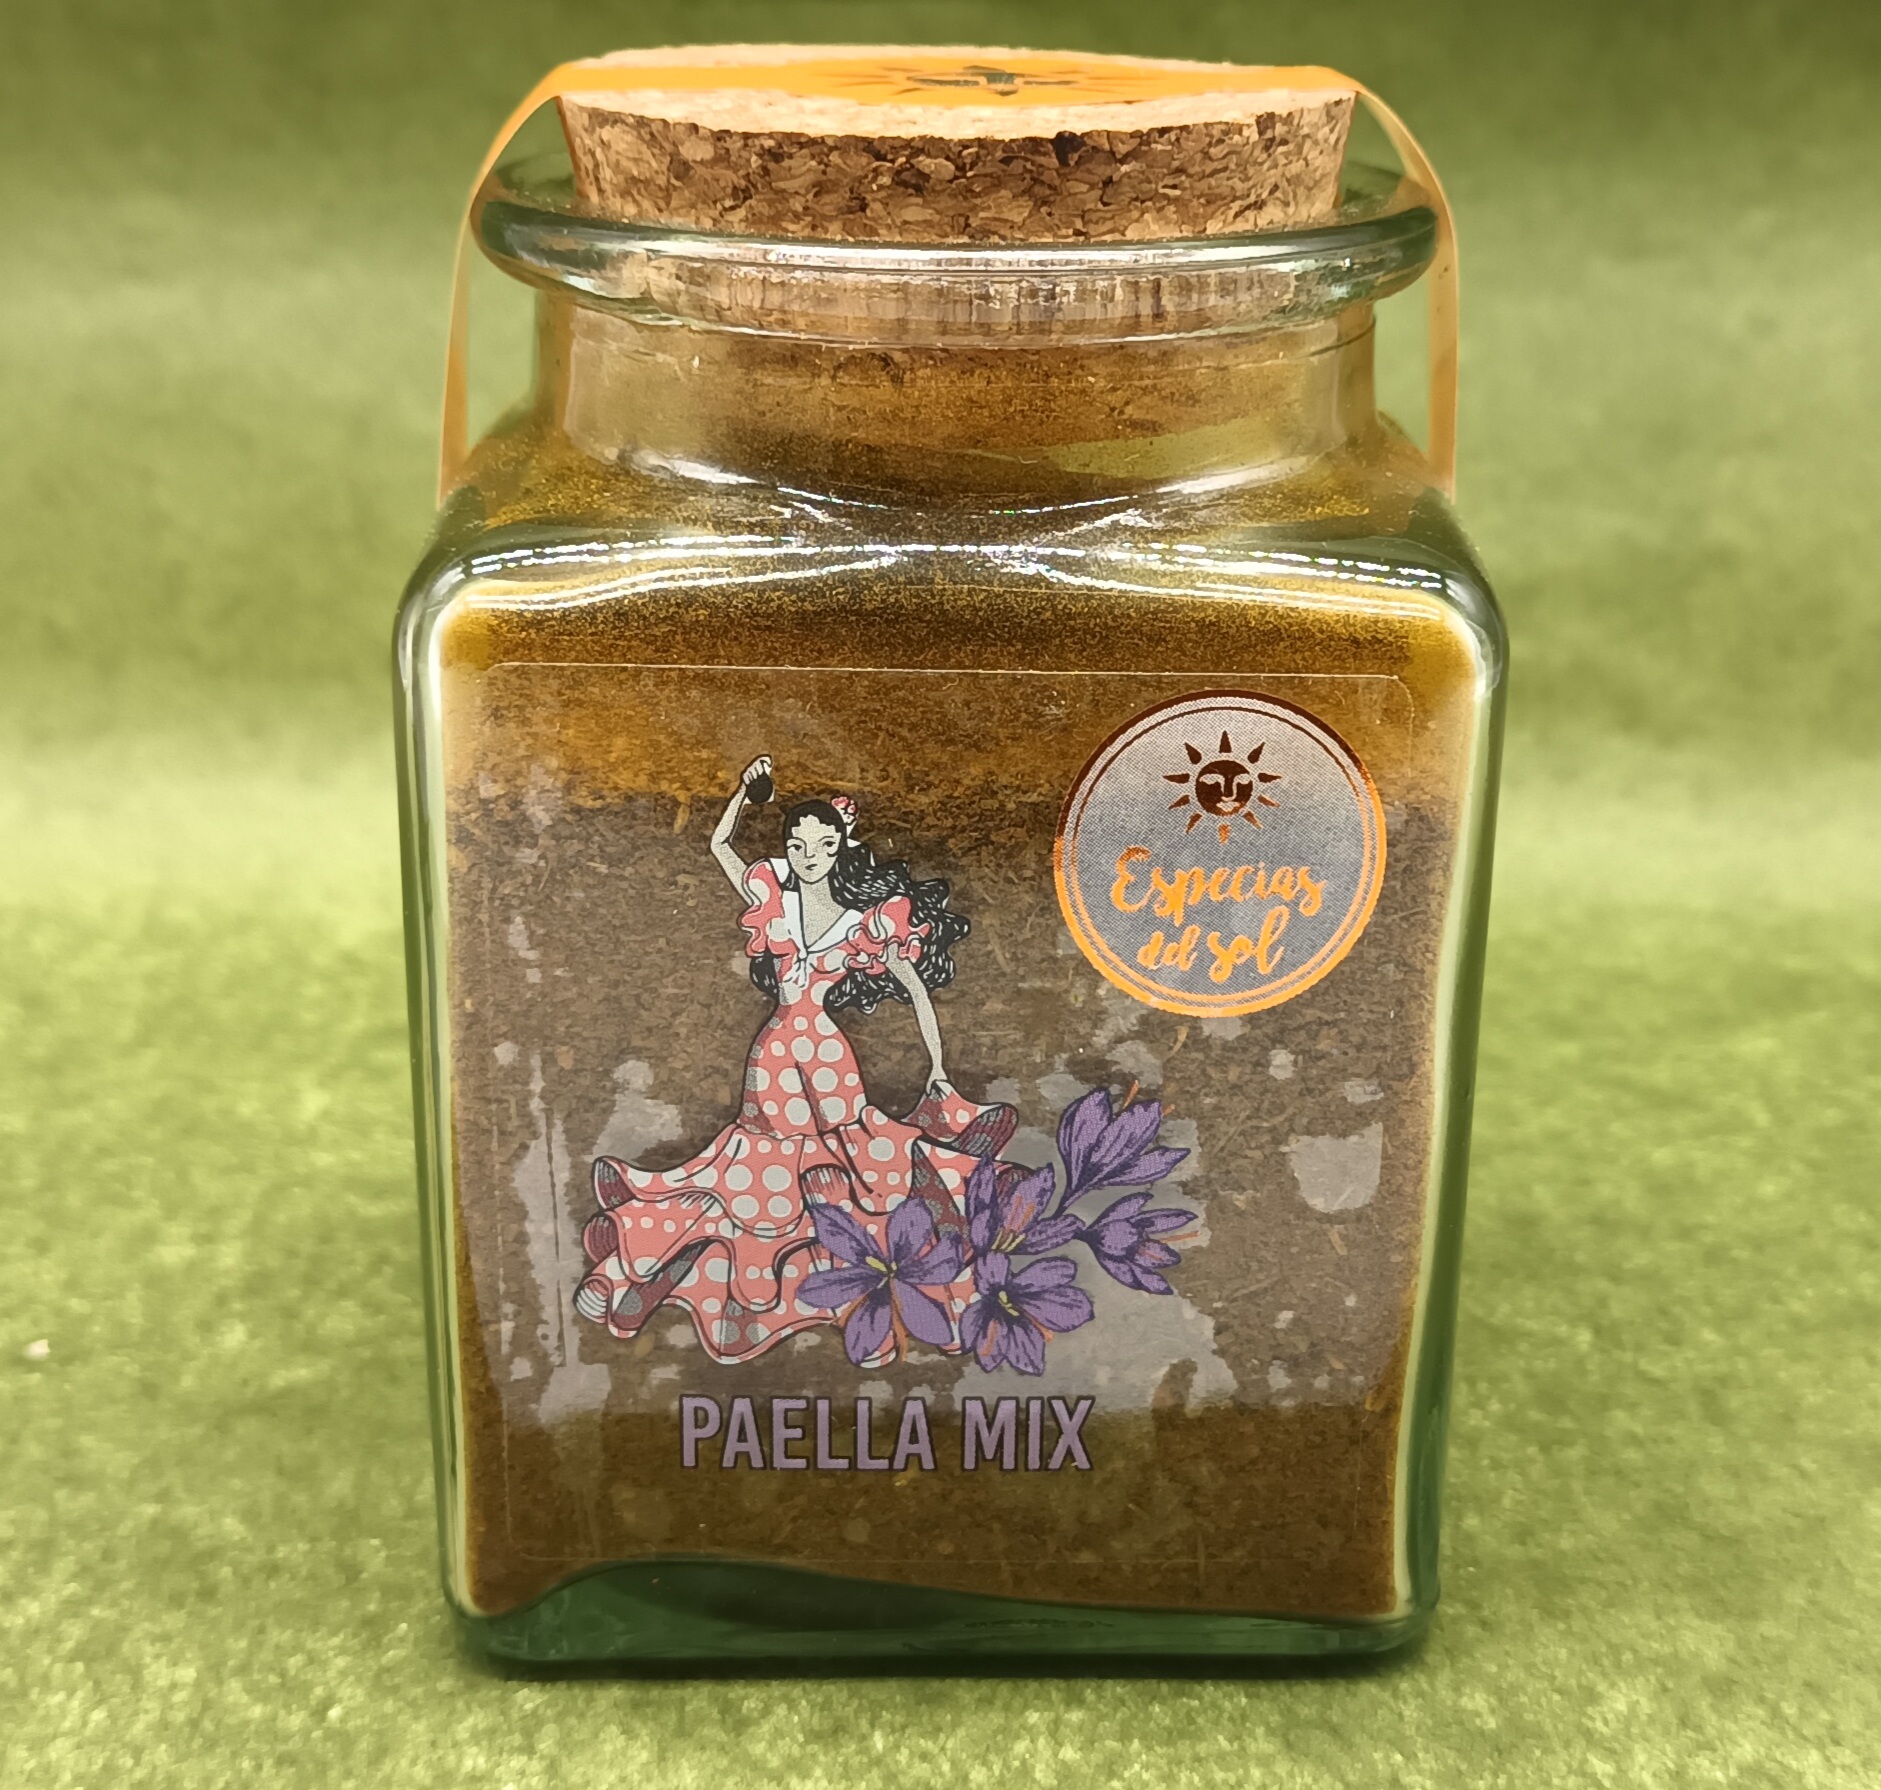 Paella Mix erlesene Gewürz Mischung im Glas, ideal zum Würzen von Paella, Reis- oder Fisch Gerichten